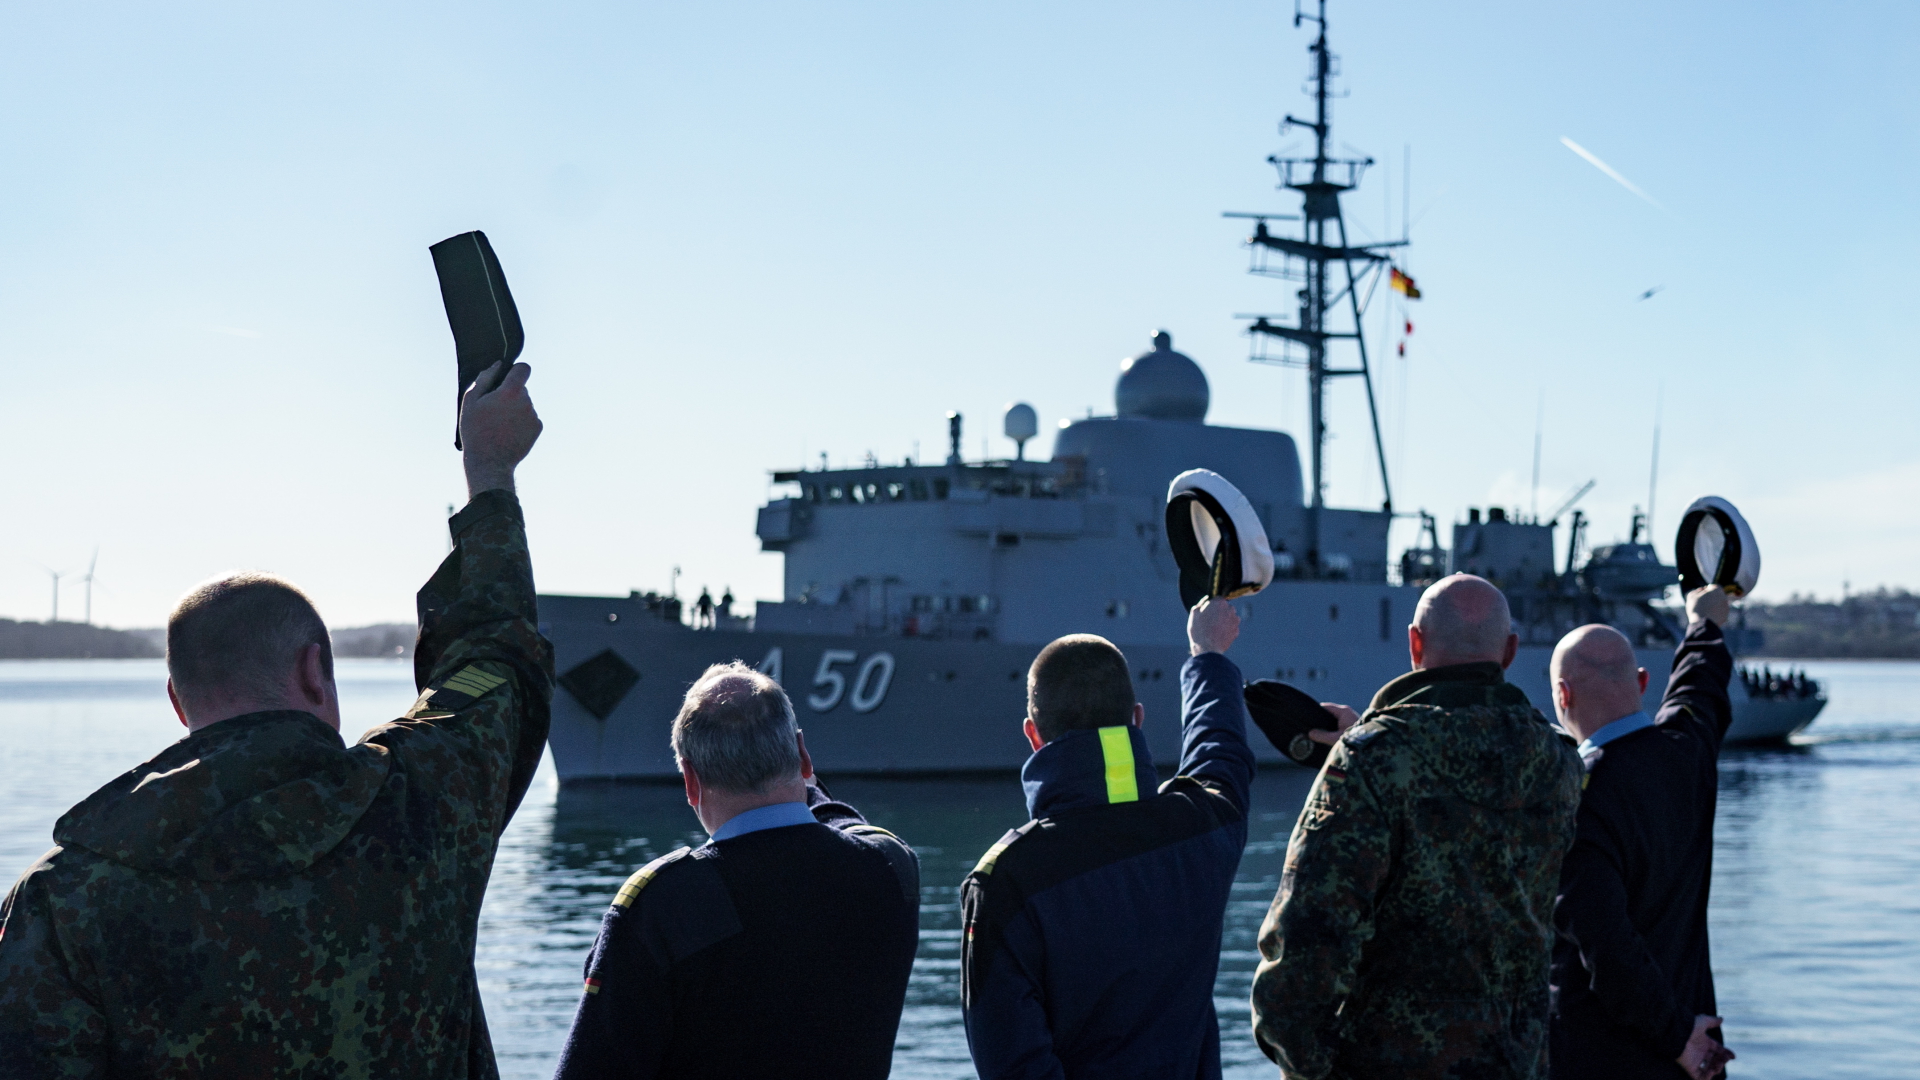 Marinesoldaten winken dem Flottendienstboot "Alster" zu, welches zur Verstärkung der NATO-Nordflanke aus dem Marinehafen ausläuft. | dpa